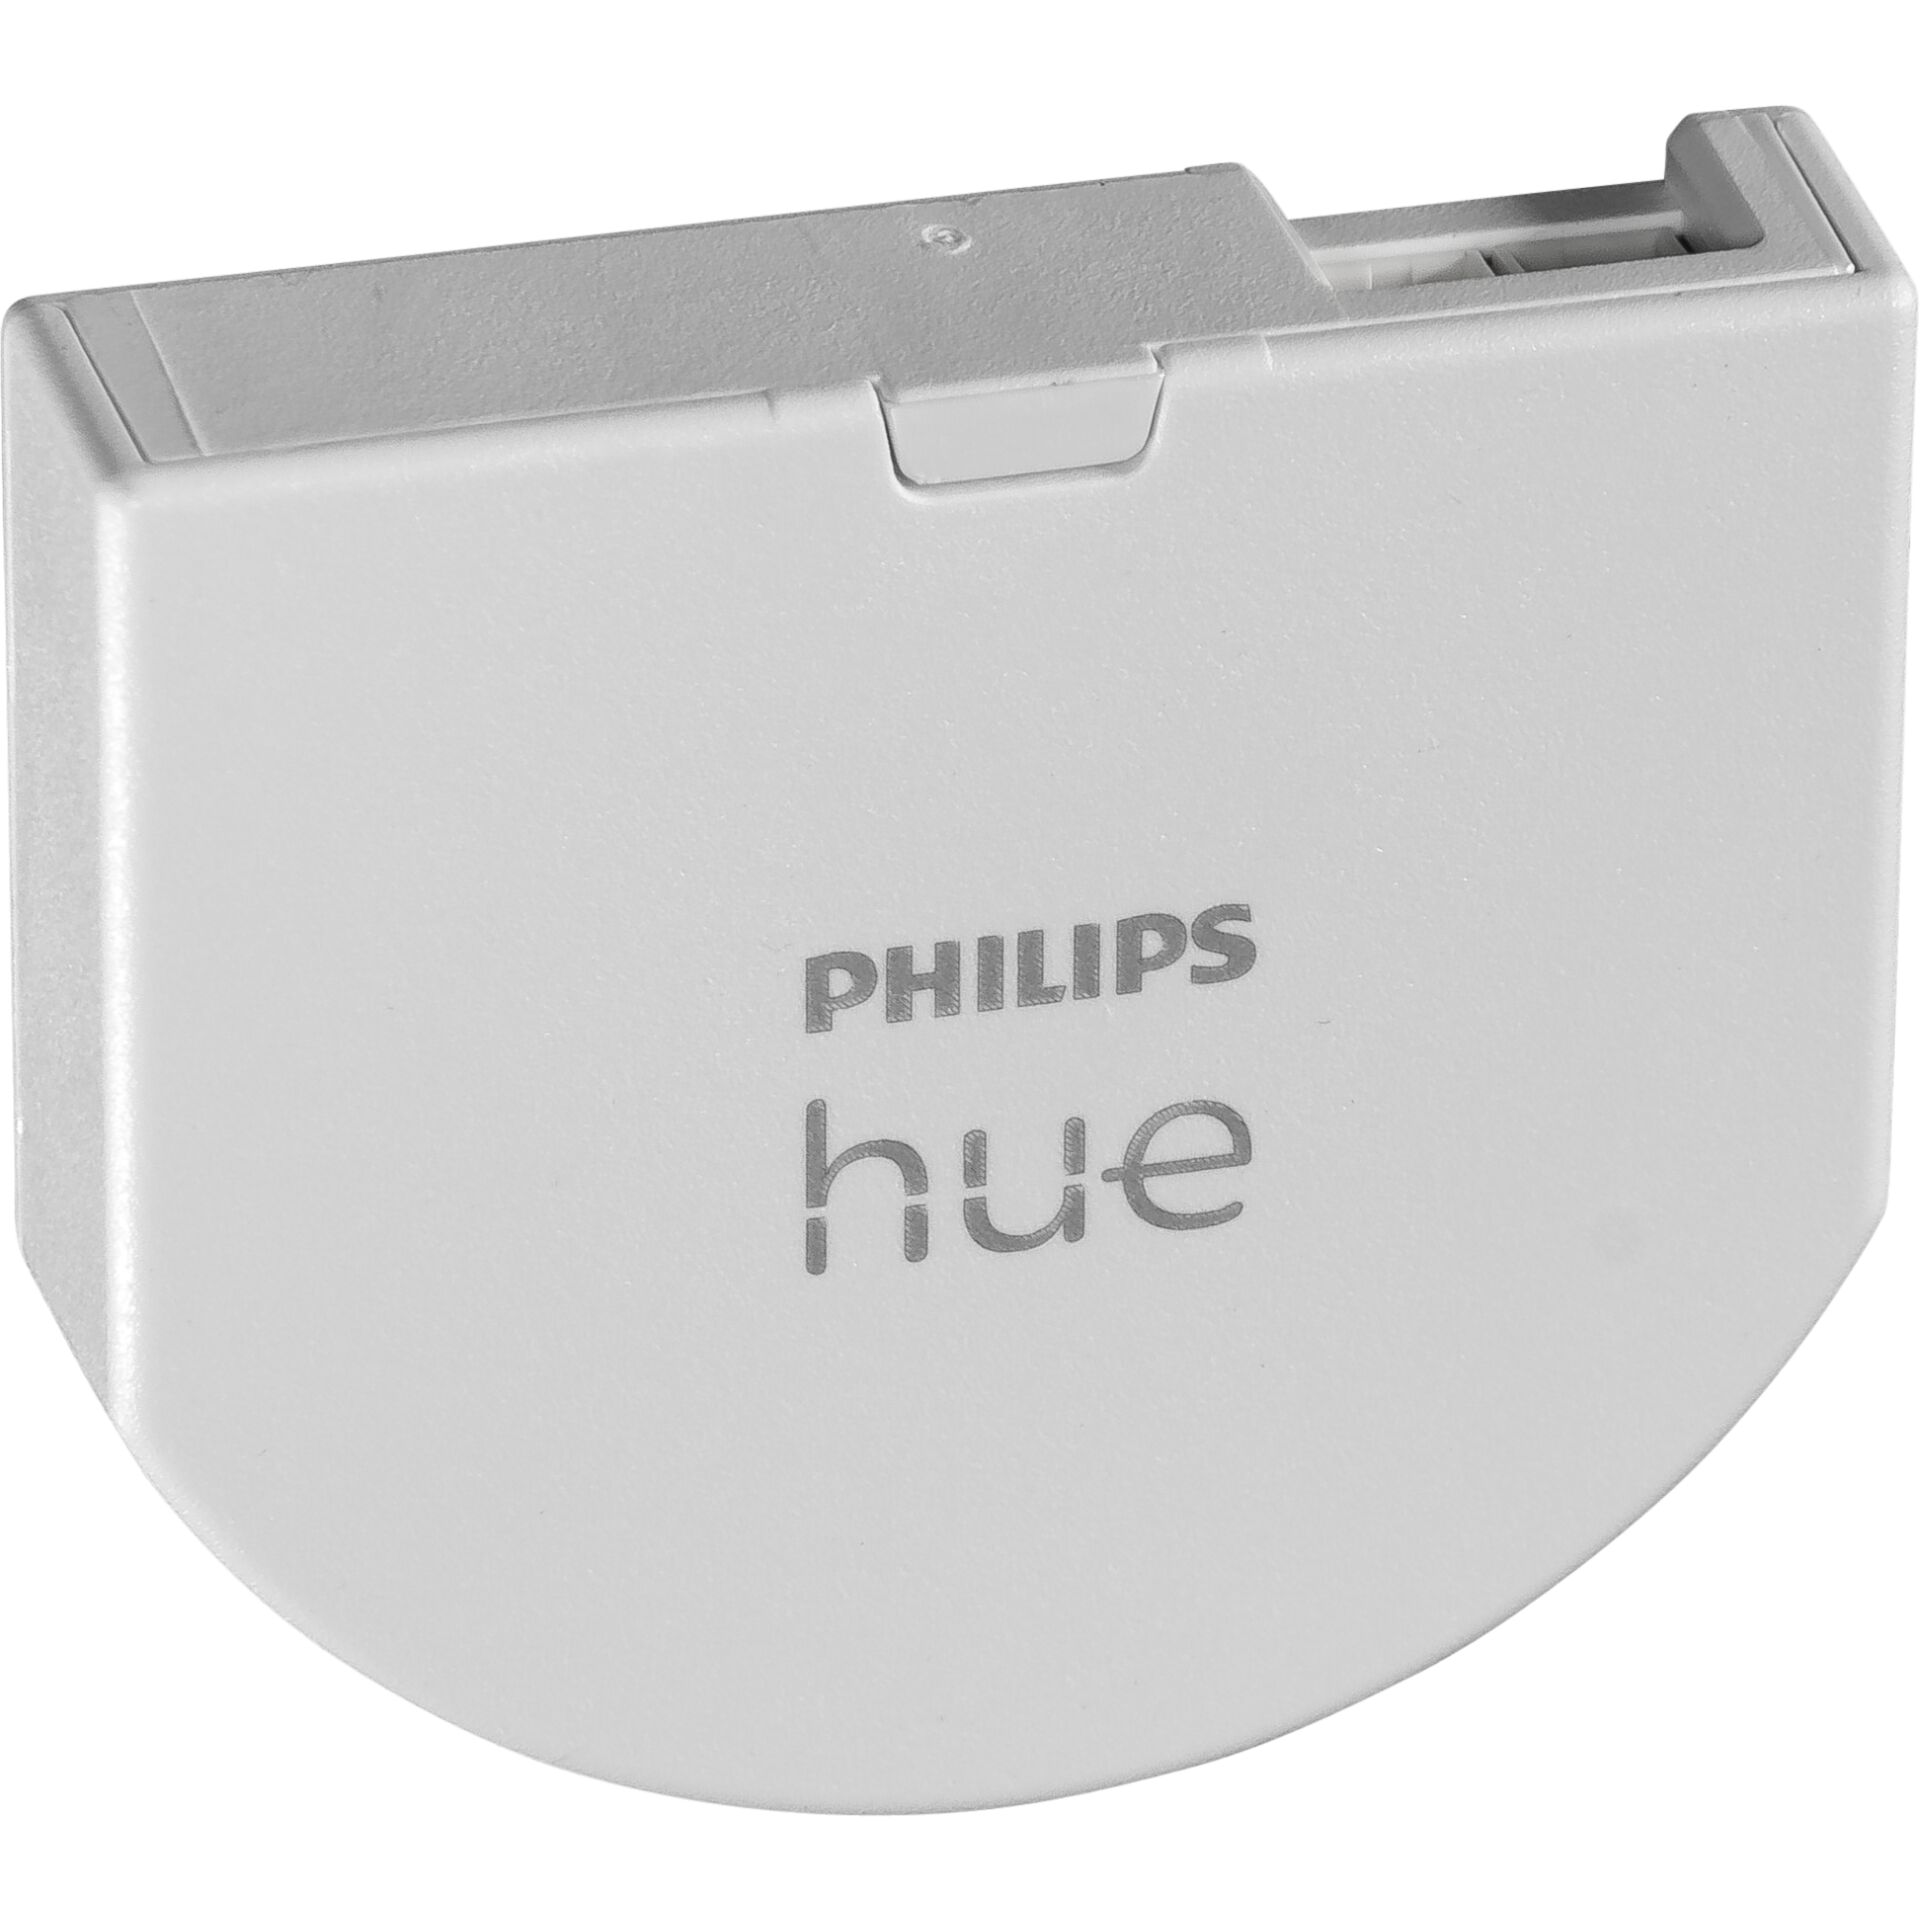 Philips Hue Wandschalter Modul Einzelpack